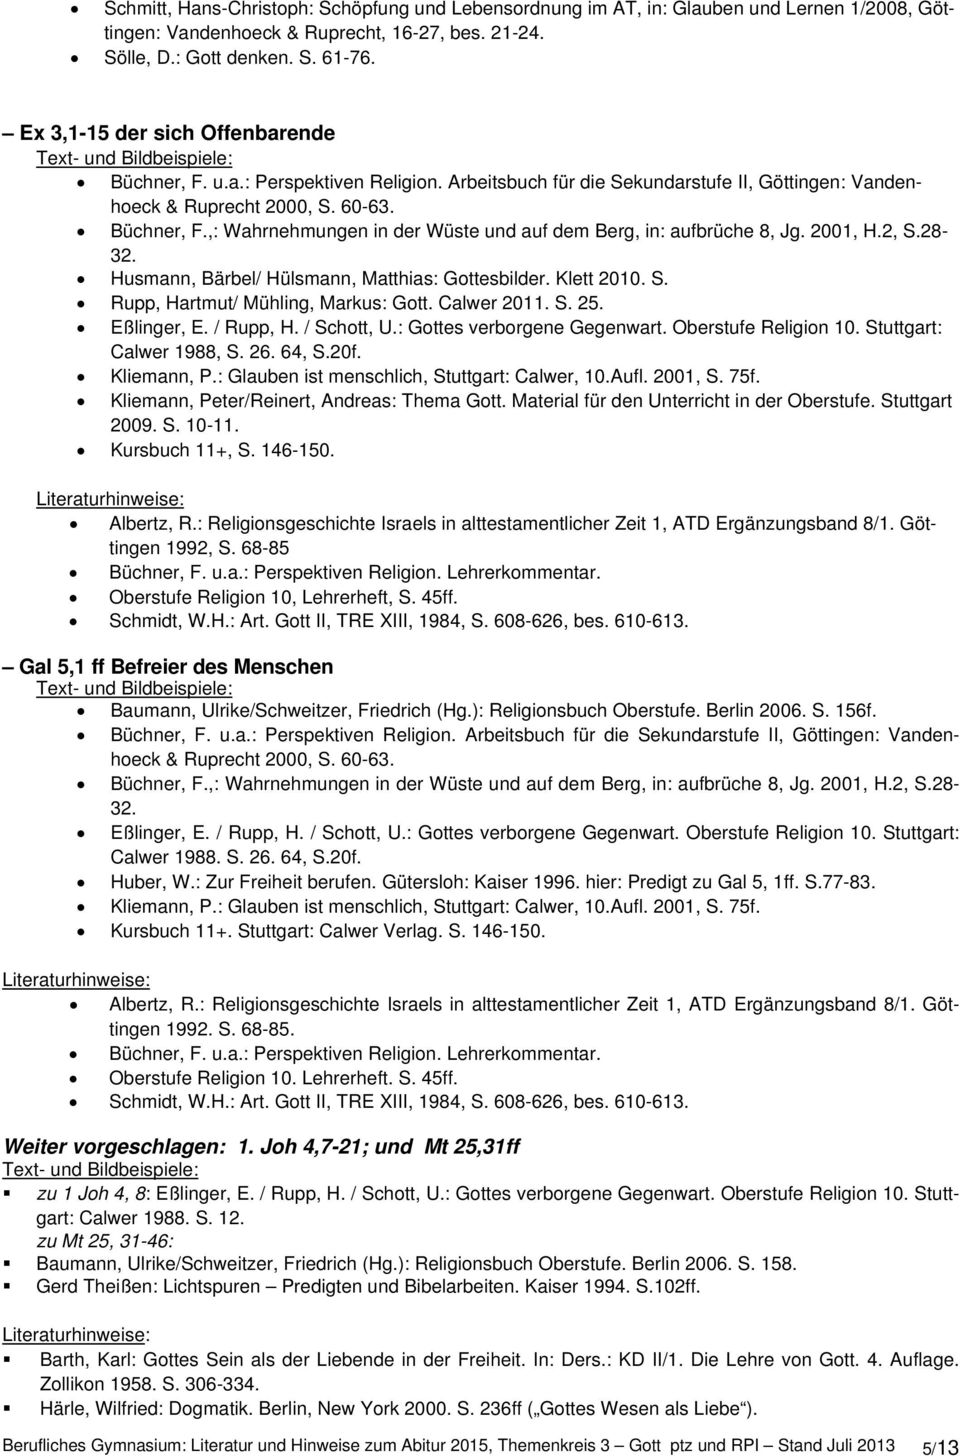 2001, H.2, S.28-32. Husmann, Bärbel/ Hülsmann, Matthias: Gottesbilder. Klett 2010. S. Rupp, Hartmut/ Mühling, Markus: Gott. Calwer 2011. S. 25. Eßlinger, E. / Rupp, H. / Schott, U.